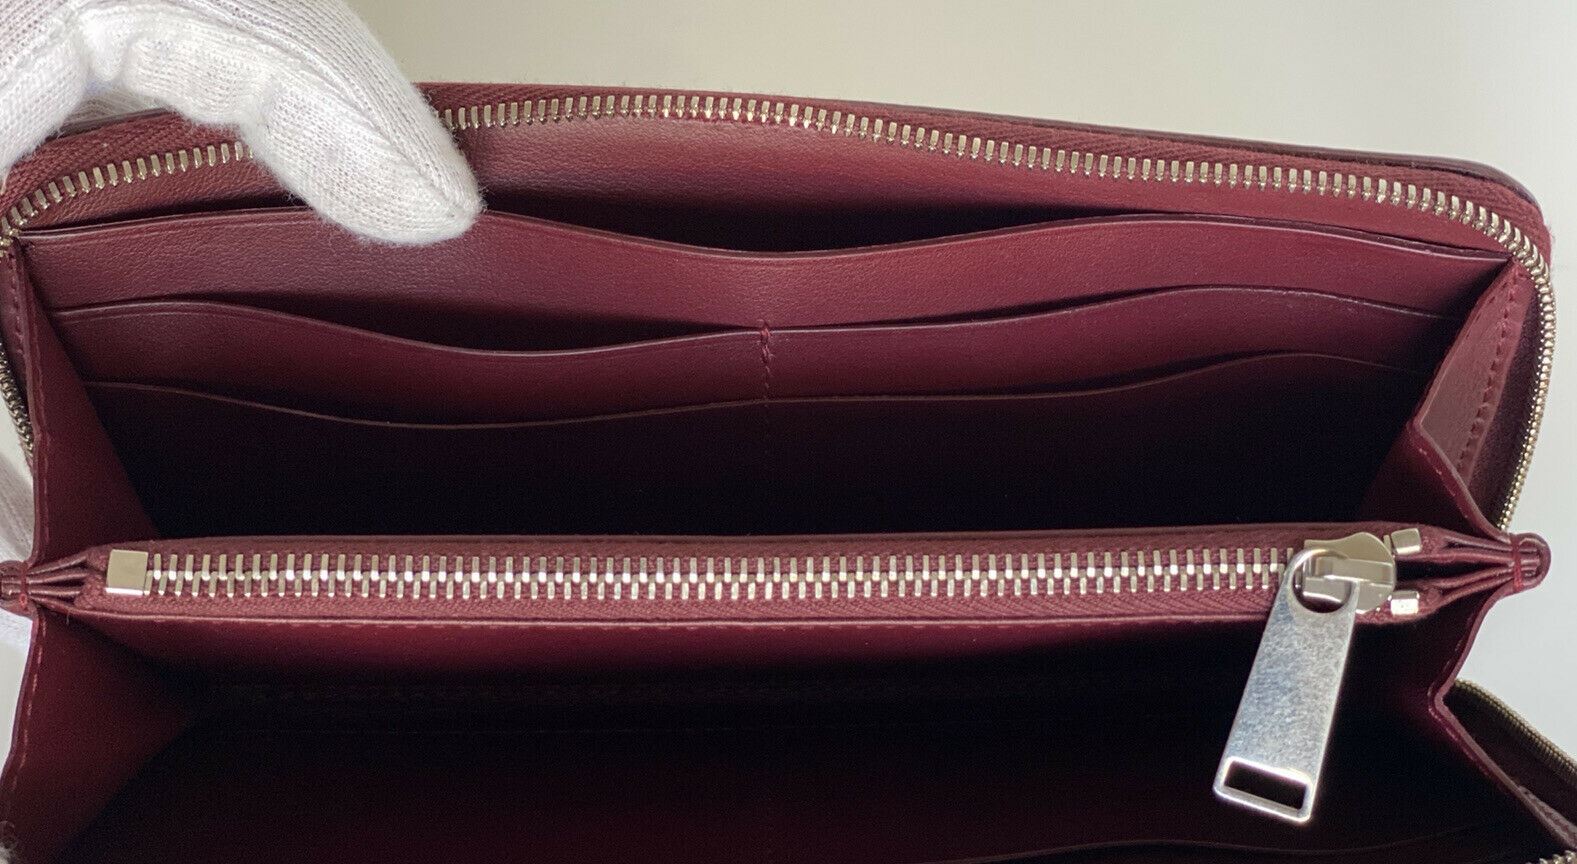 NWT $720 Кожаный кошелек Bottega Veneta Continental на молнии бордовый 573431 